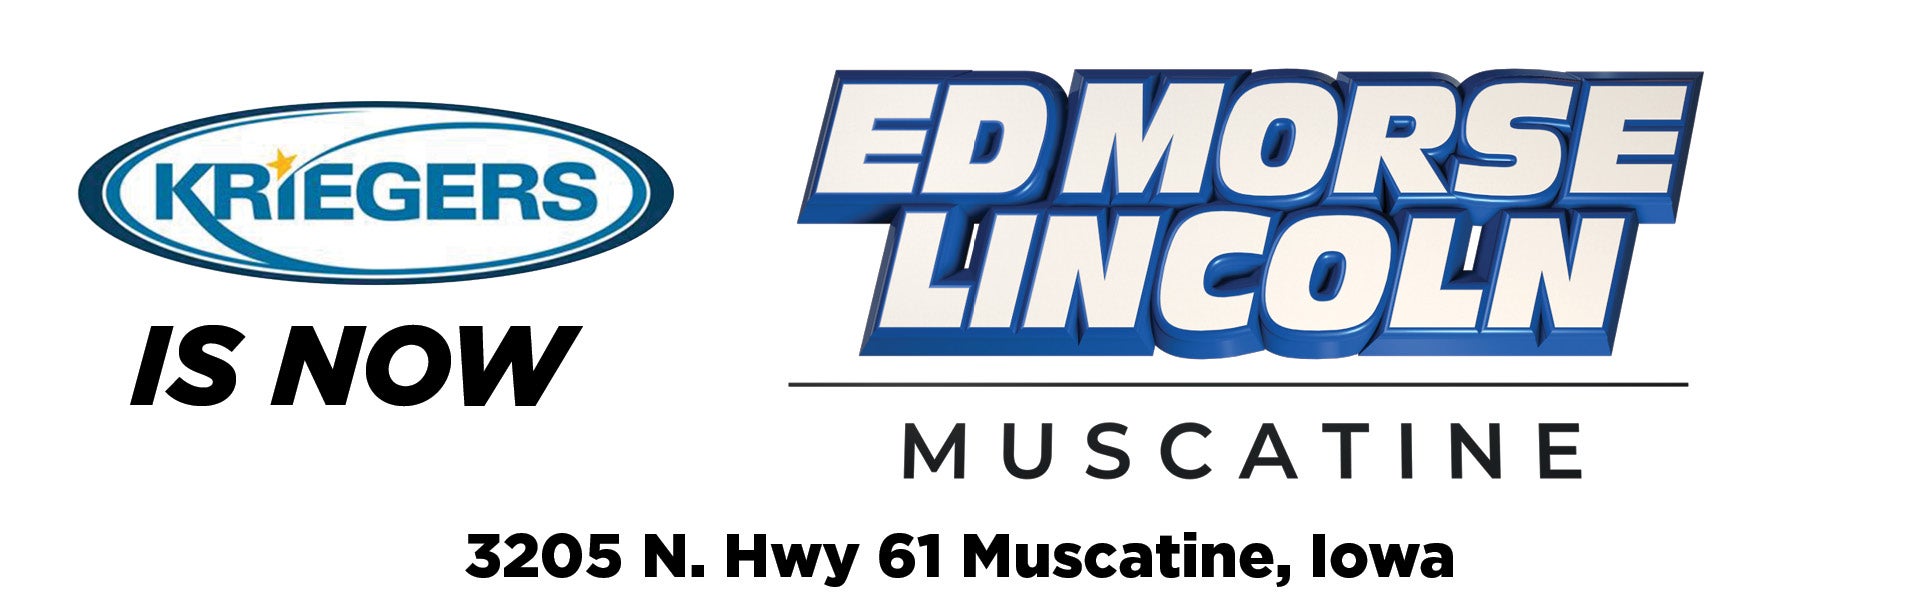 New Ed Morse Lincoln